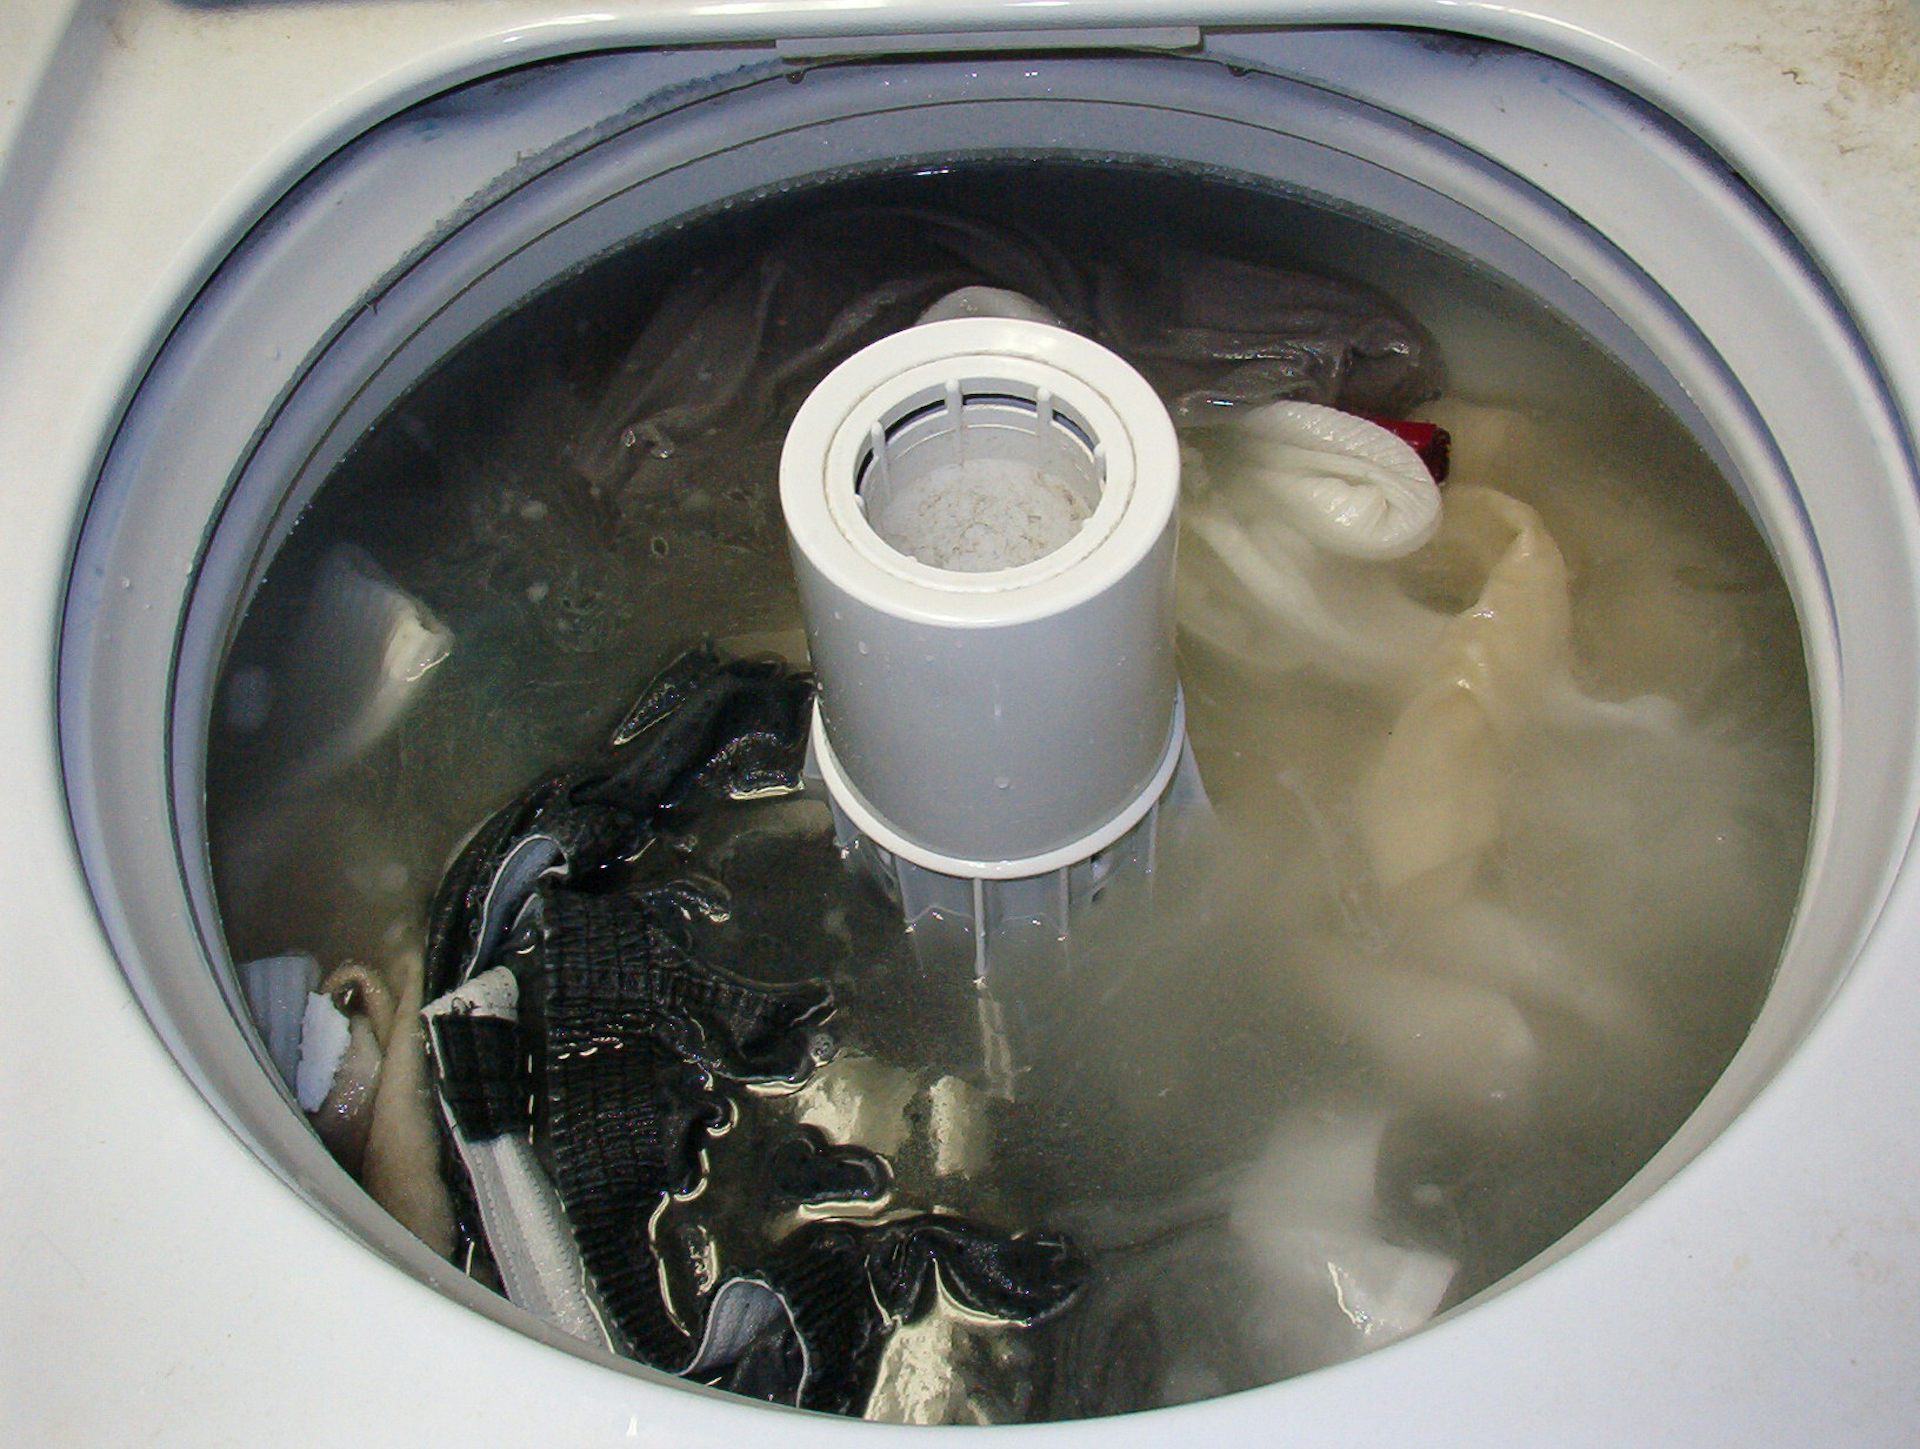 washing clothes laundry